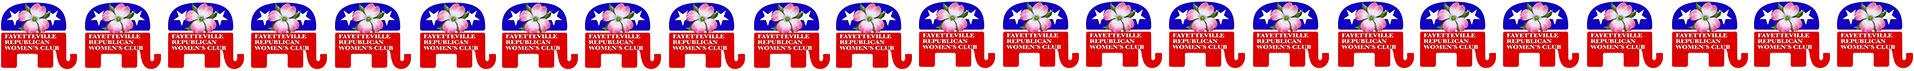 Fayetteville Republican Women's Club